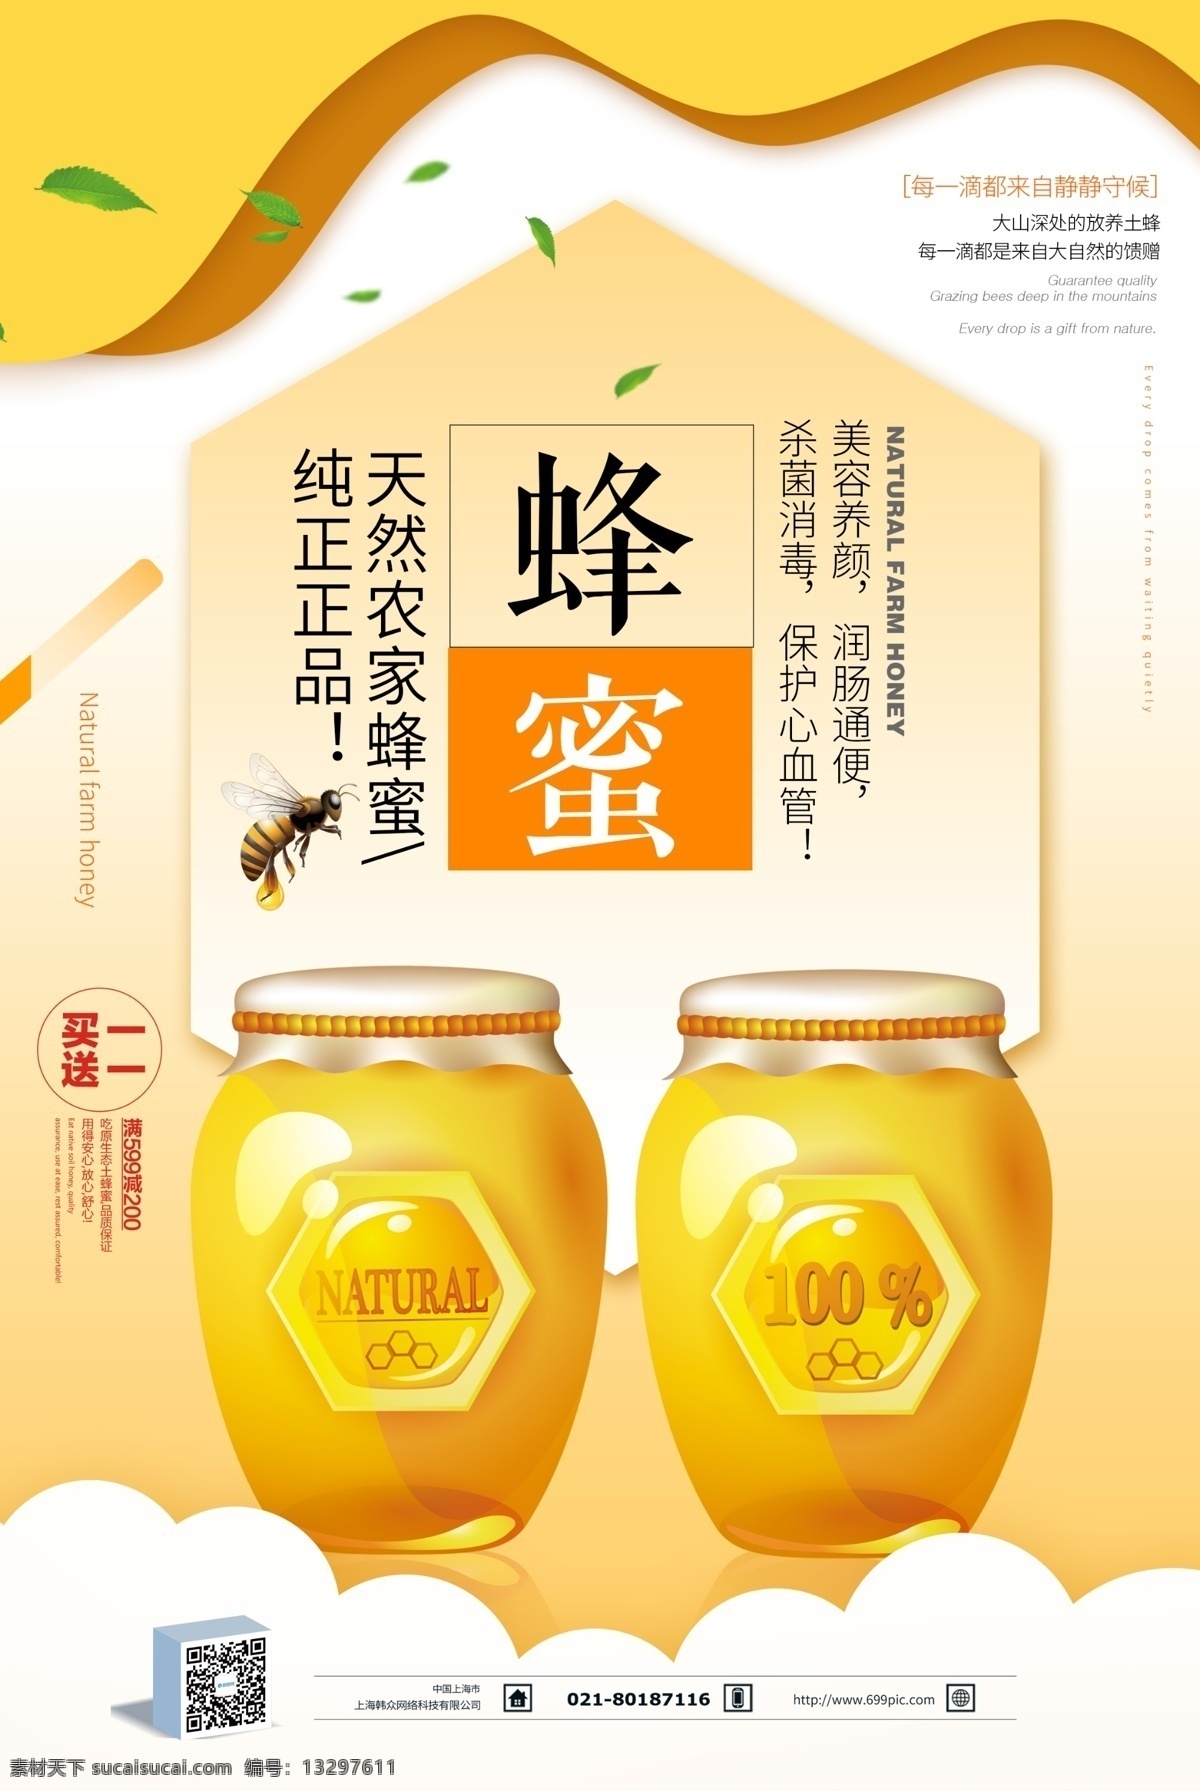 蜂蜜美食海报 天然农家蜂蜜 蜂蜜 天然蜂蜜 进口蜂蜜 纯天然蜂蜜 蜂蜜产品 淘宝蜂蜜 野生蜂蜜 蜂蜜促销 蜂王浆 养生食品